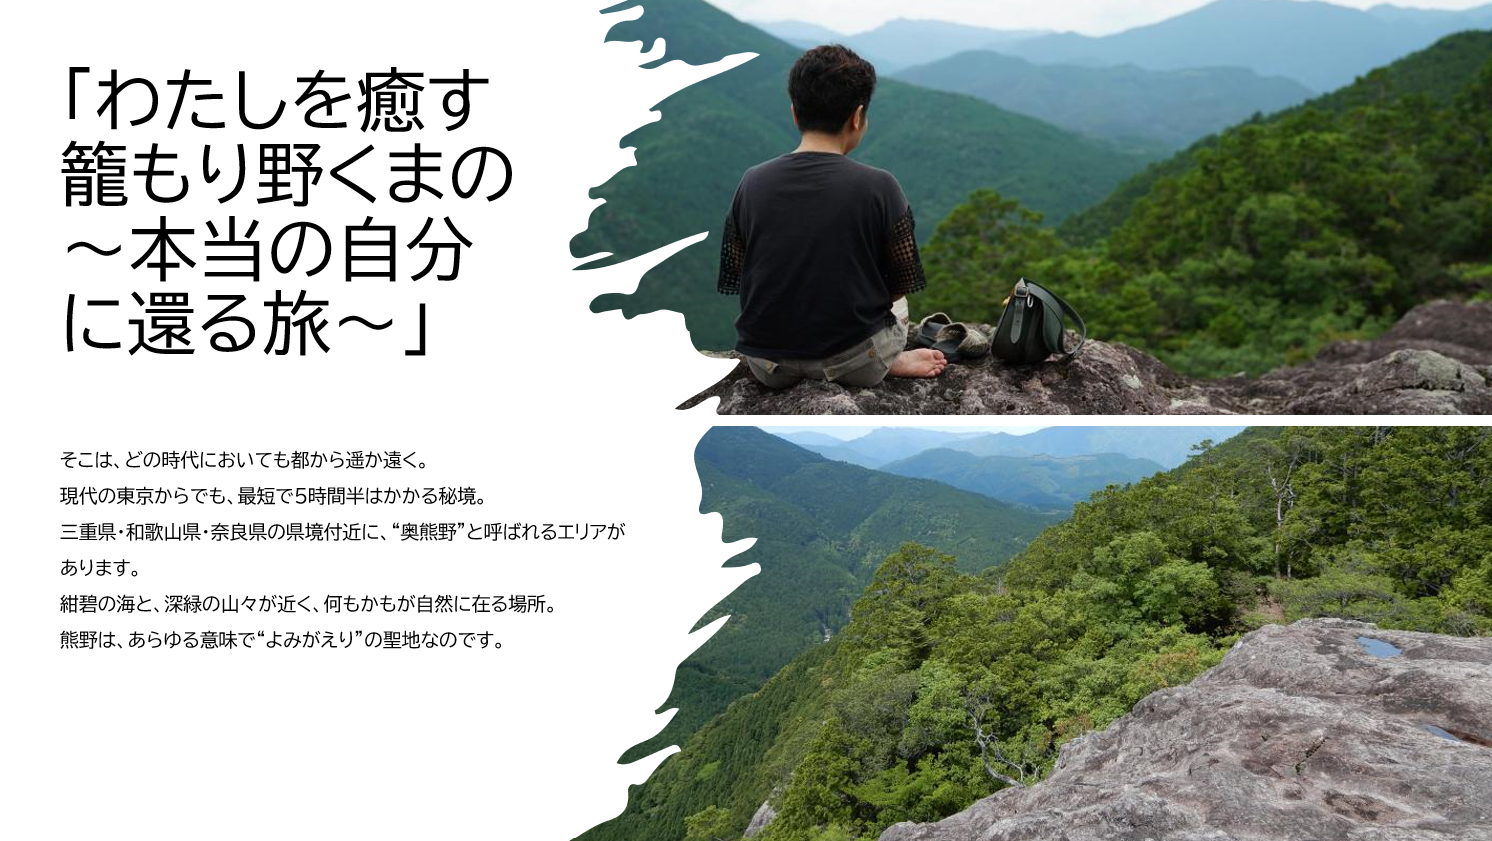 熊野市観光協会presents!「わたしを癒す籠もり野くまの～本当の自分に還る旅～」